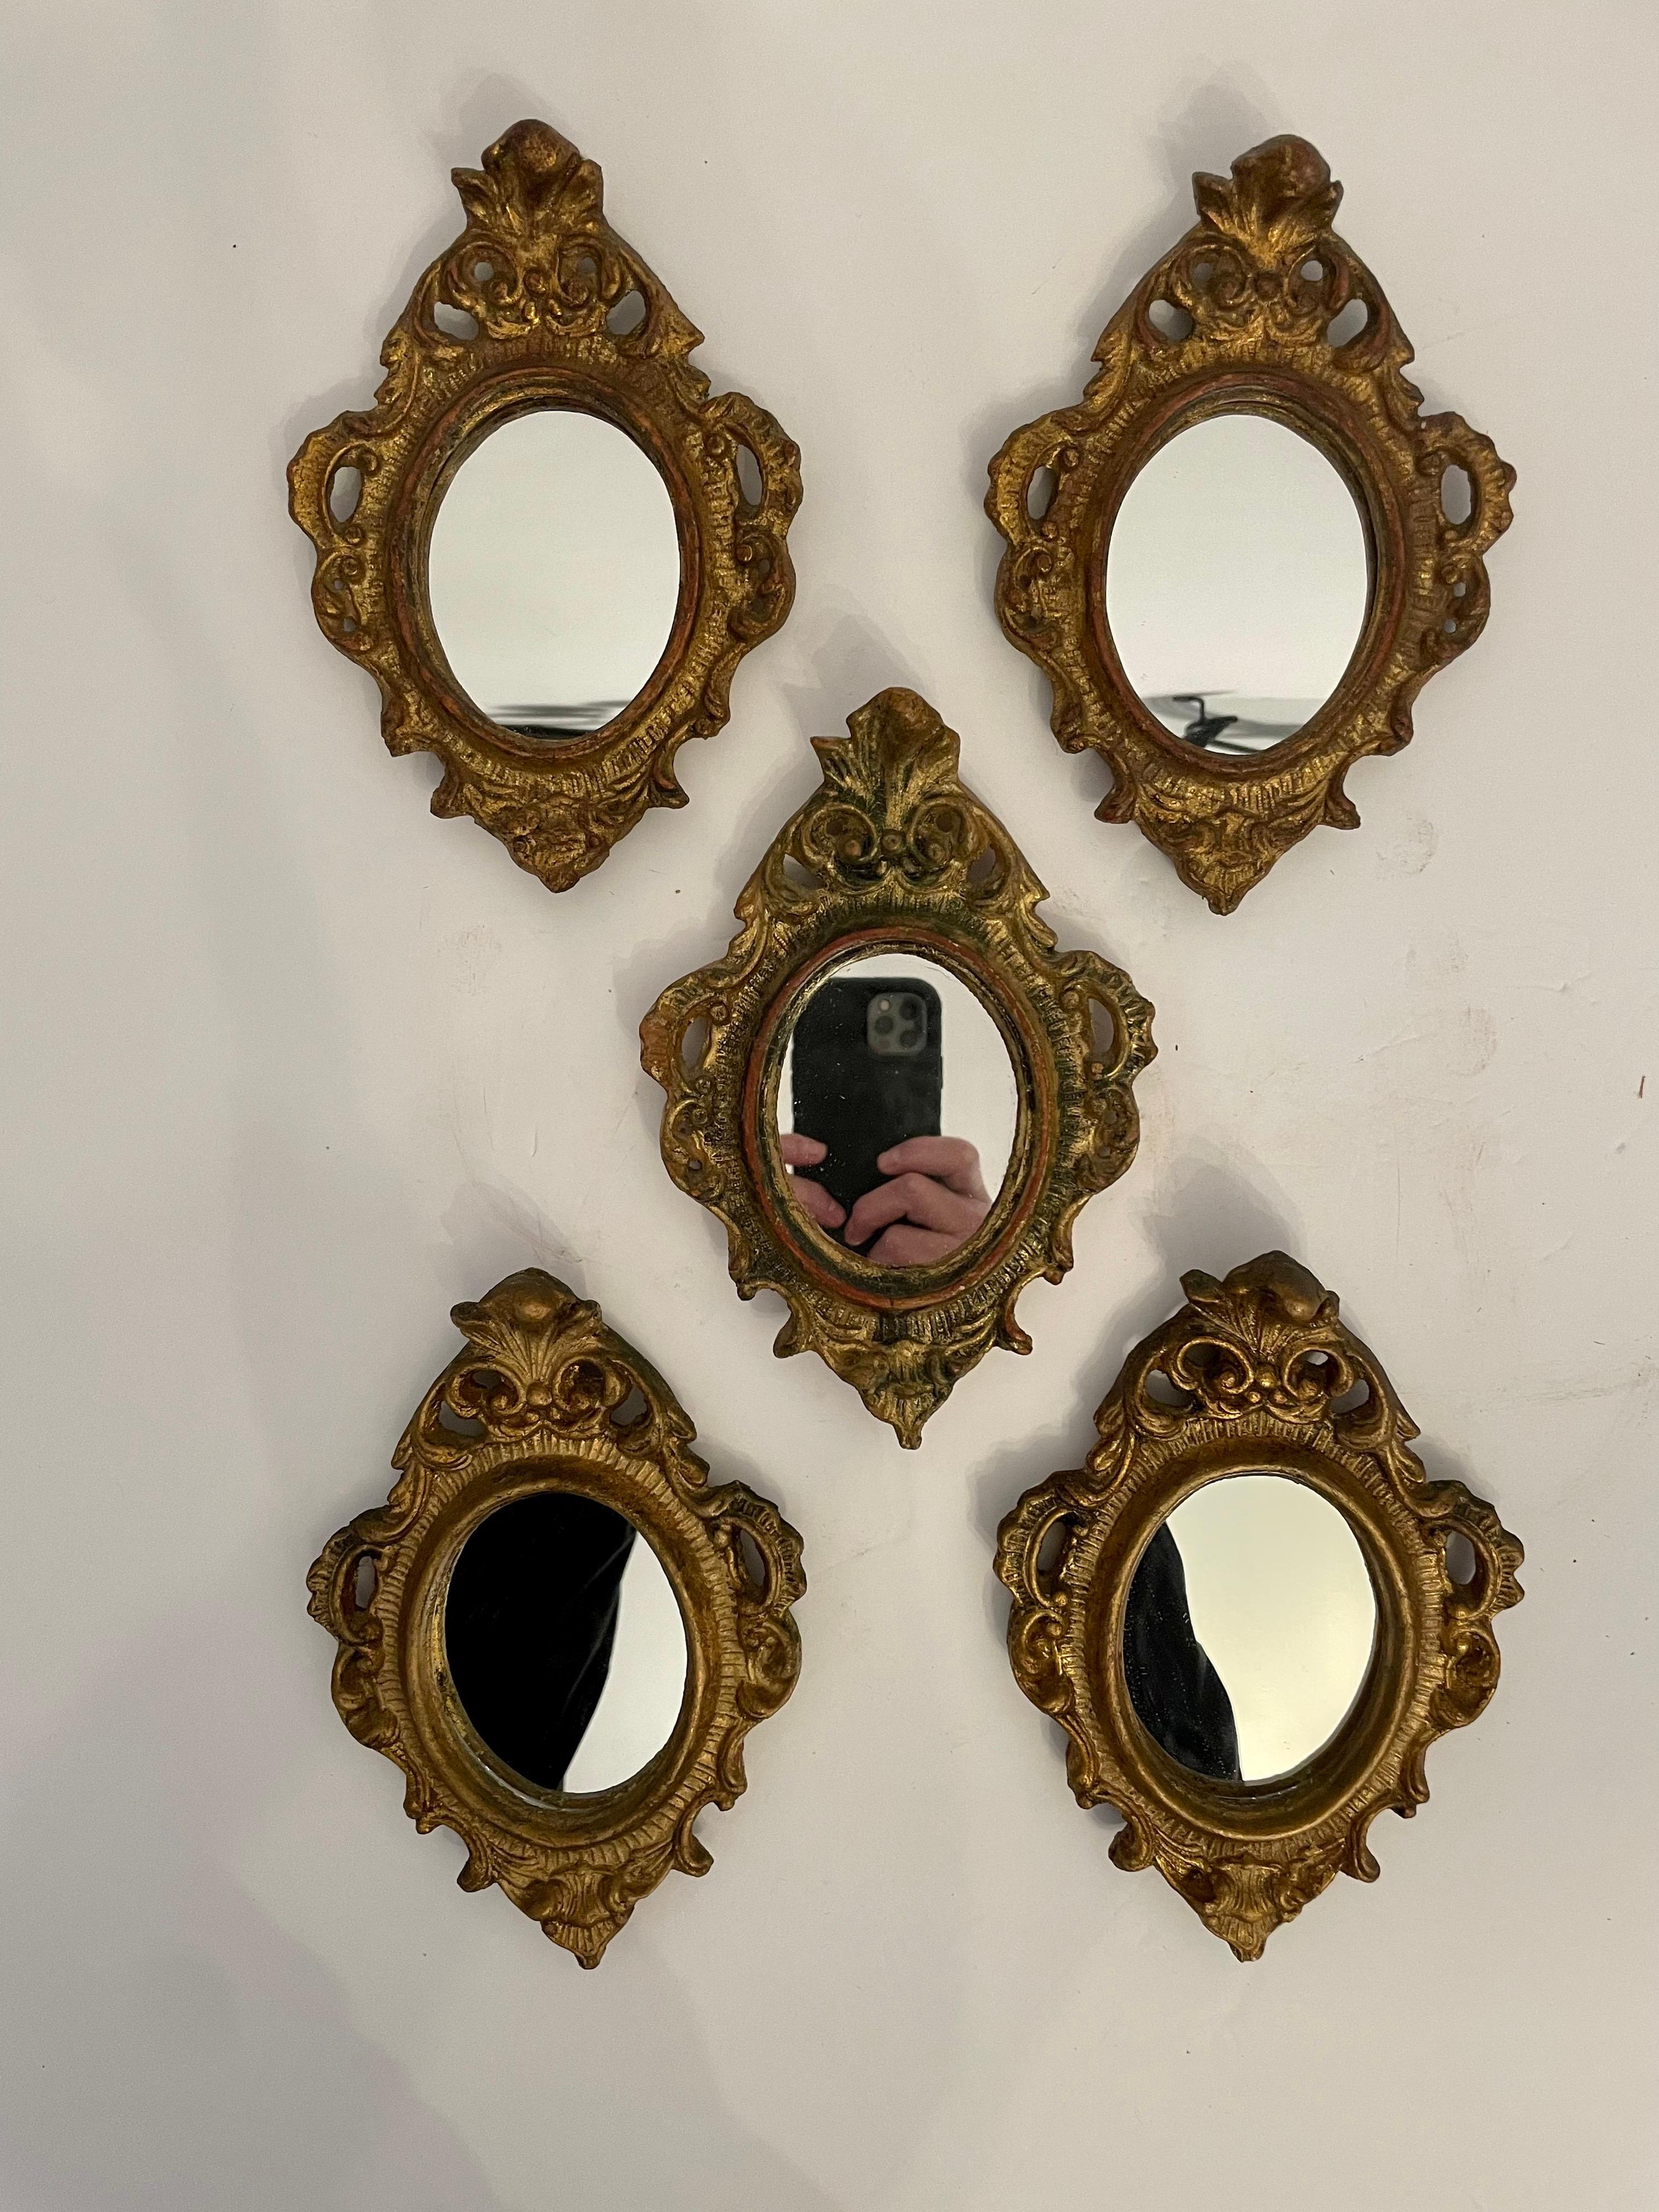 Eine Gruppe von fünf italienischen Florentine-Spiegeln im Hollywood-Regency-Stil aus vergoldetem Holz. Alles in gutem Zustand, mit neu ersetzten Spiegeln. Zwei im oberen Teil des Fotos messen 7,5